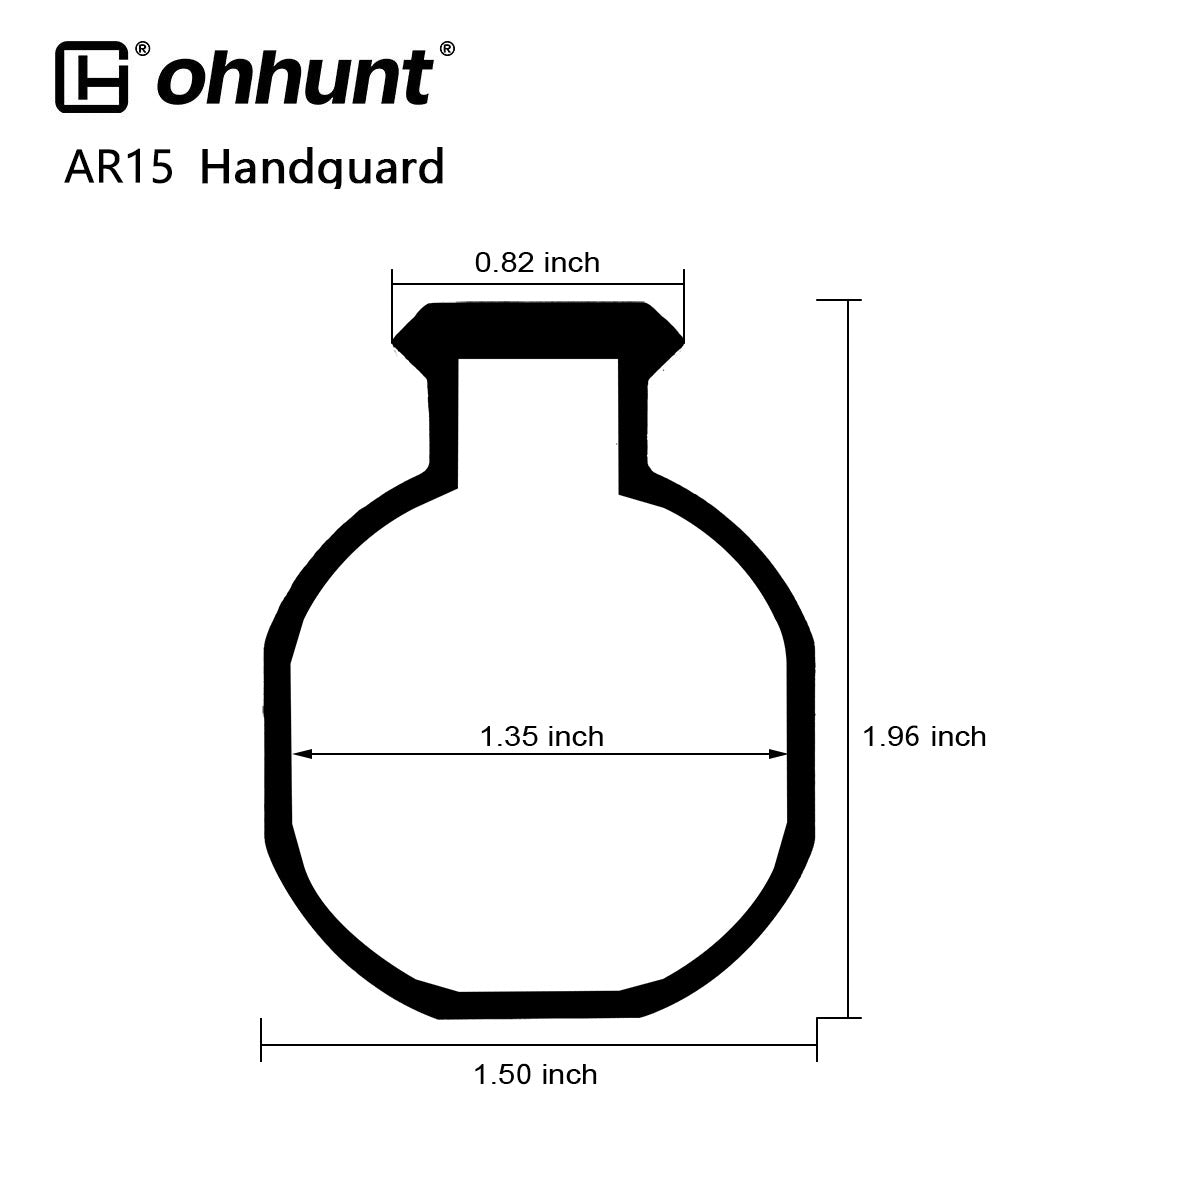 ohhunt AR15 Free Float Keymod Handguard with Barrel Nut - 9 inch